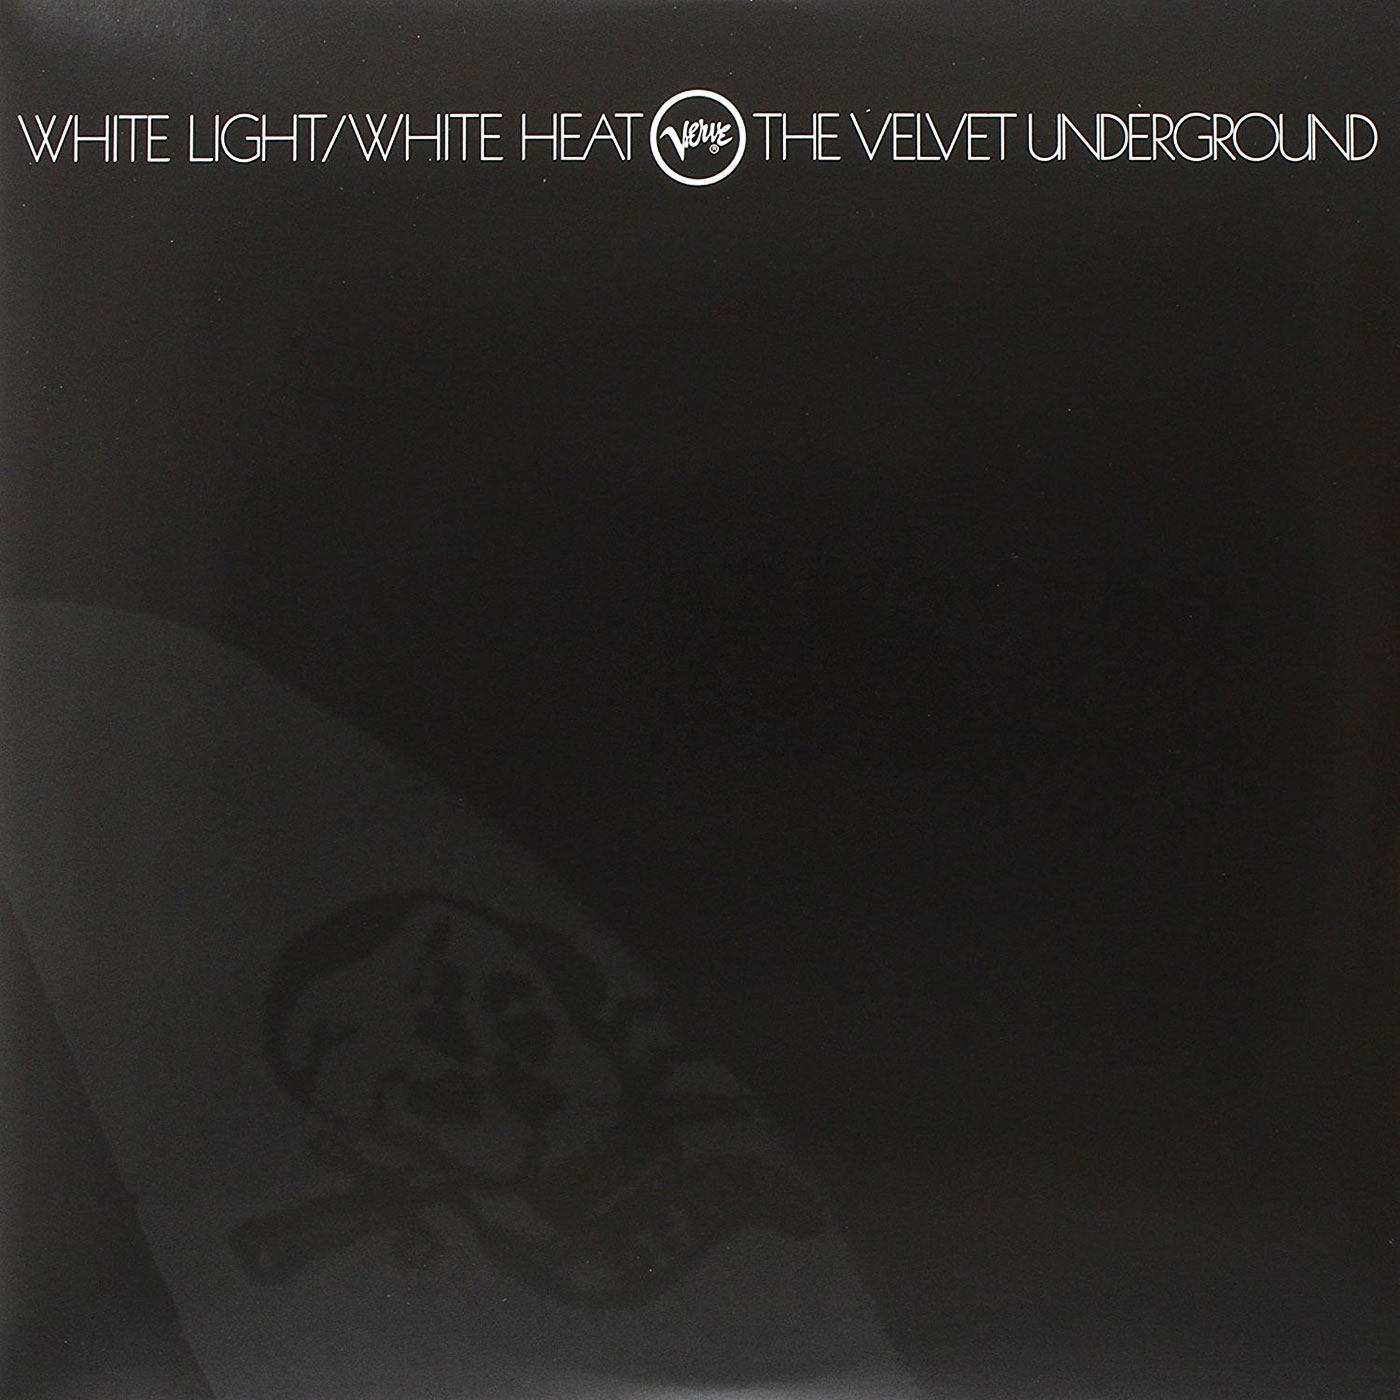 104 The Velvet Underground – White Light White Heat